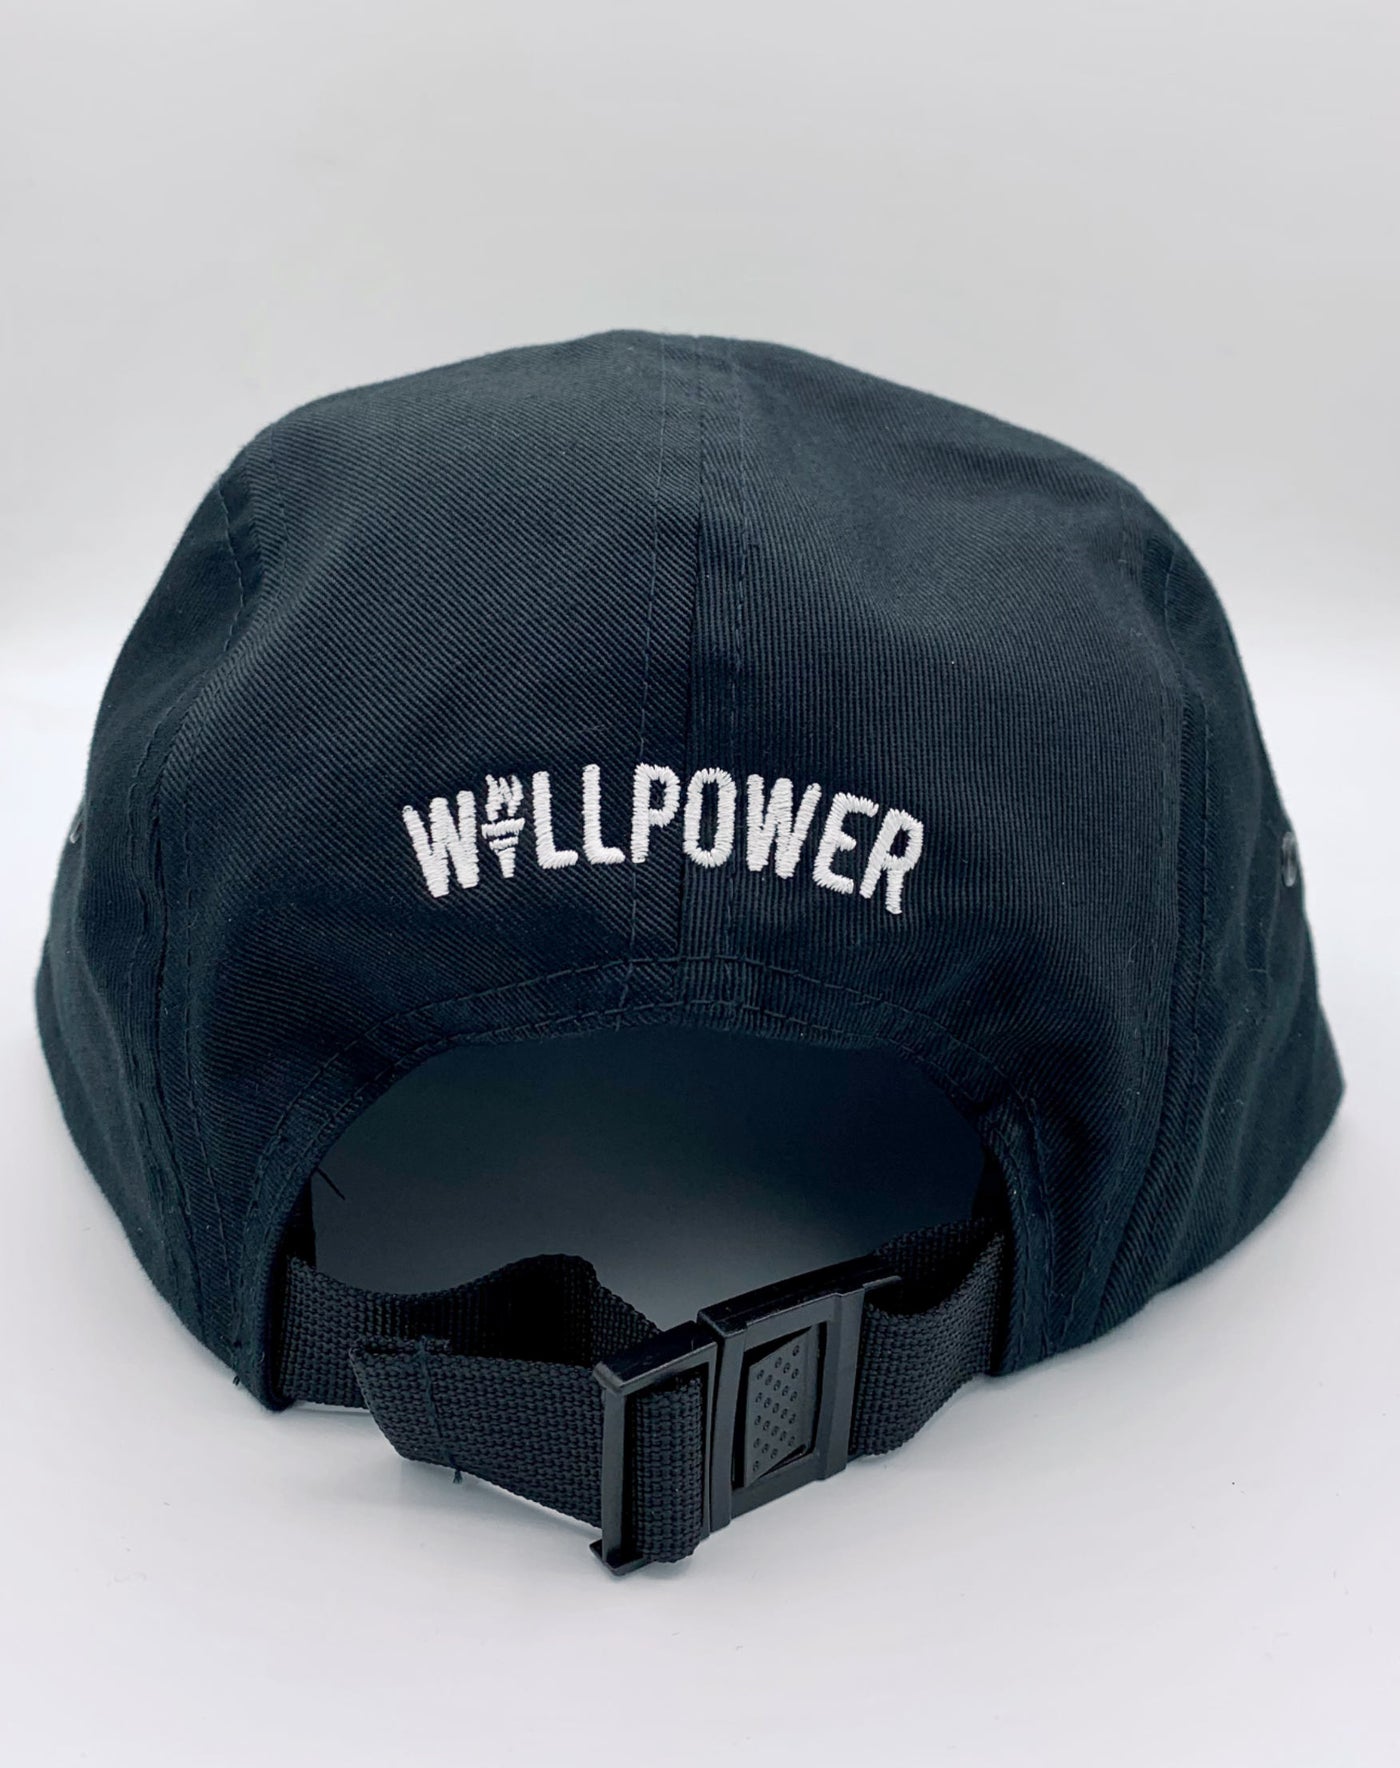 Willpower Jockey Racing Cap (Black)